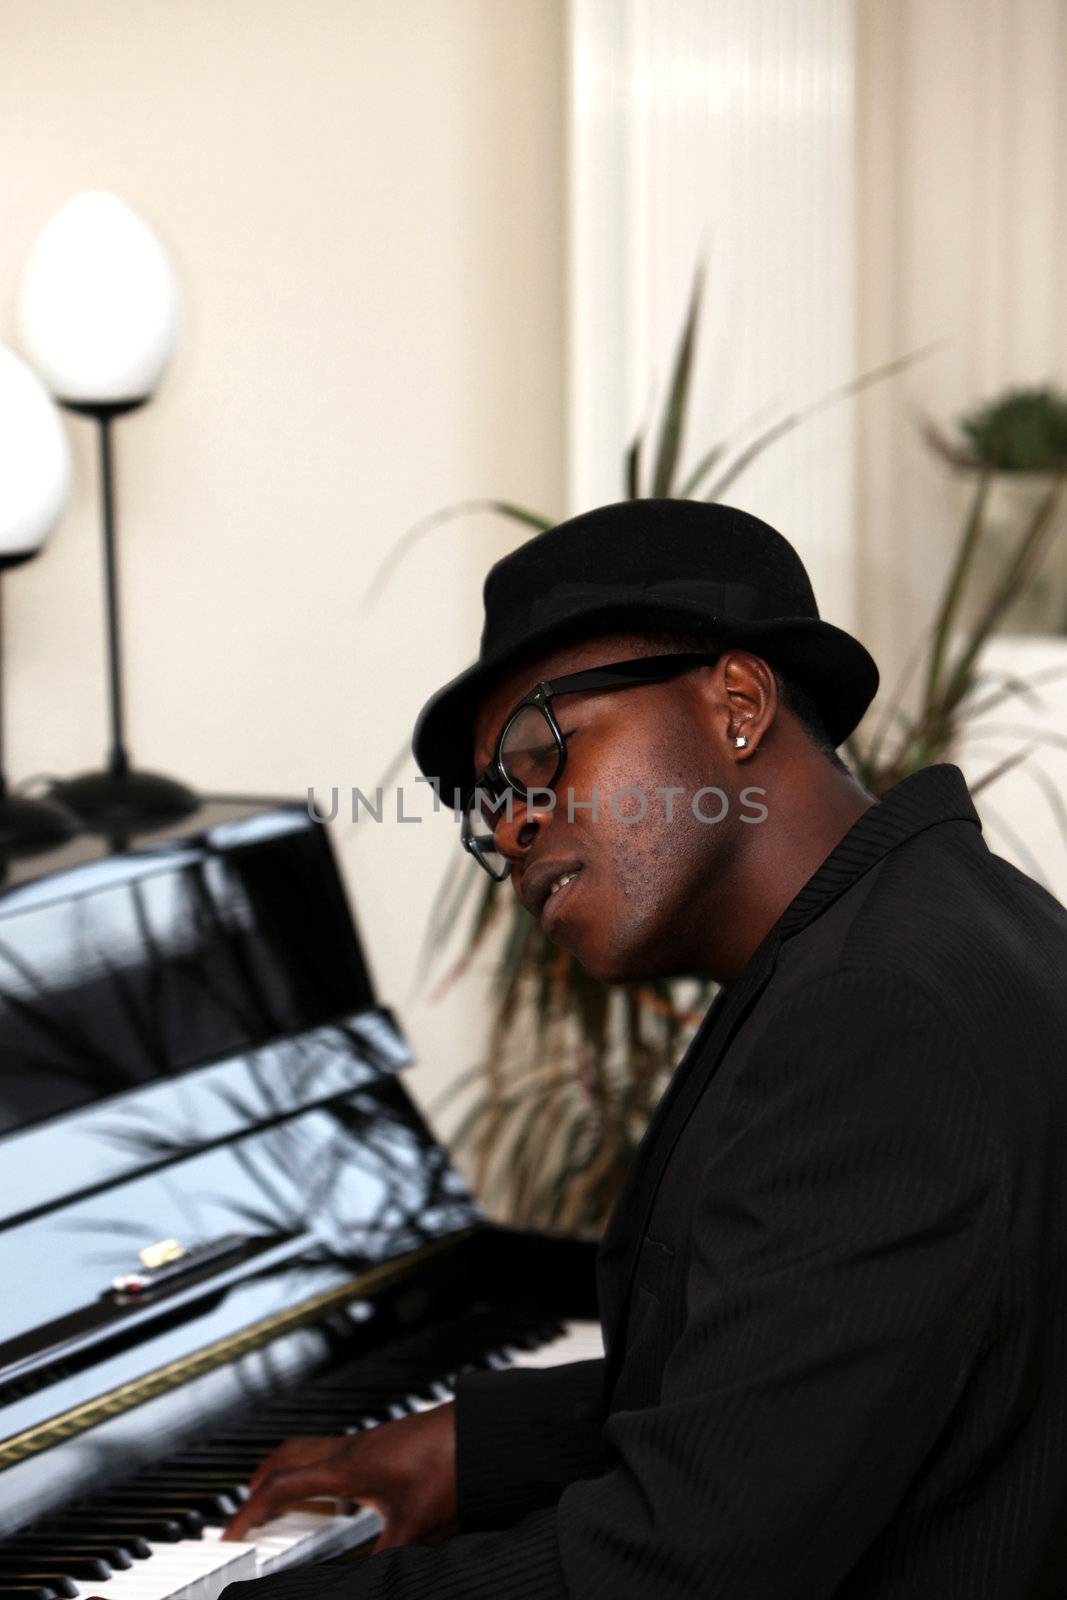 Man at the Piano by Farina6000